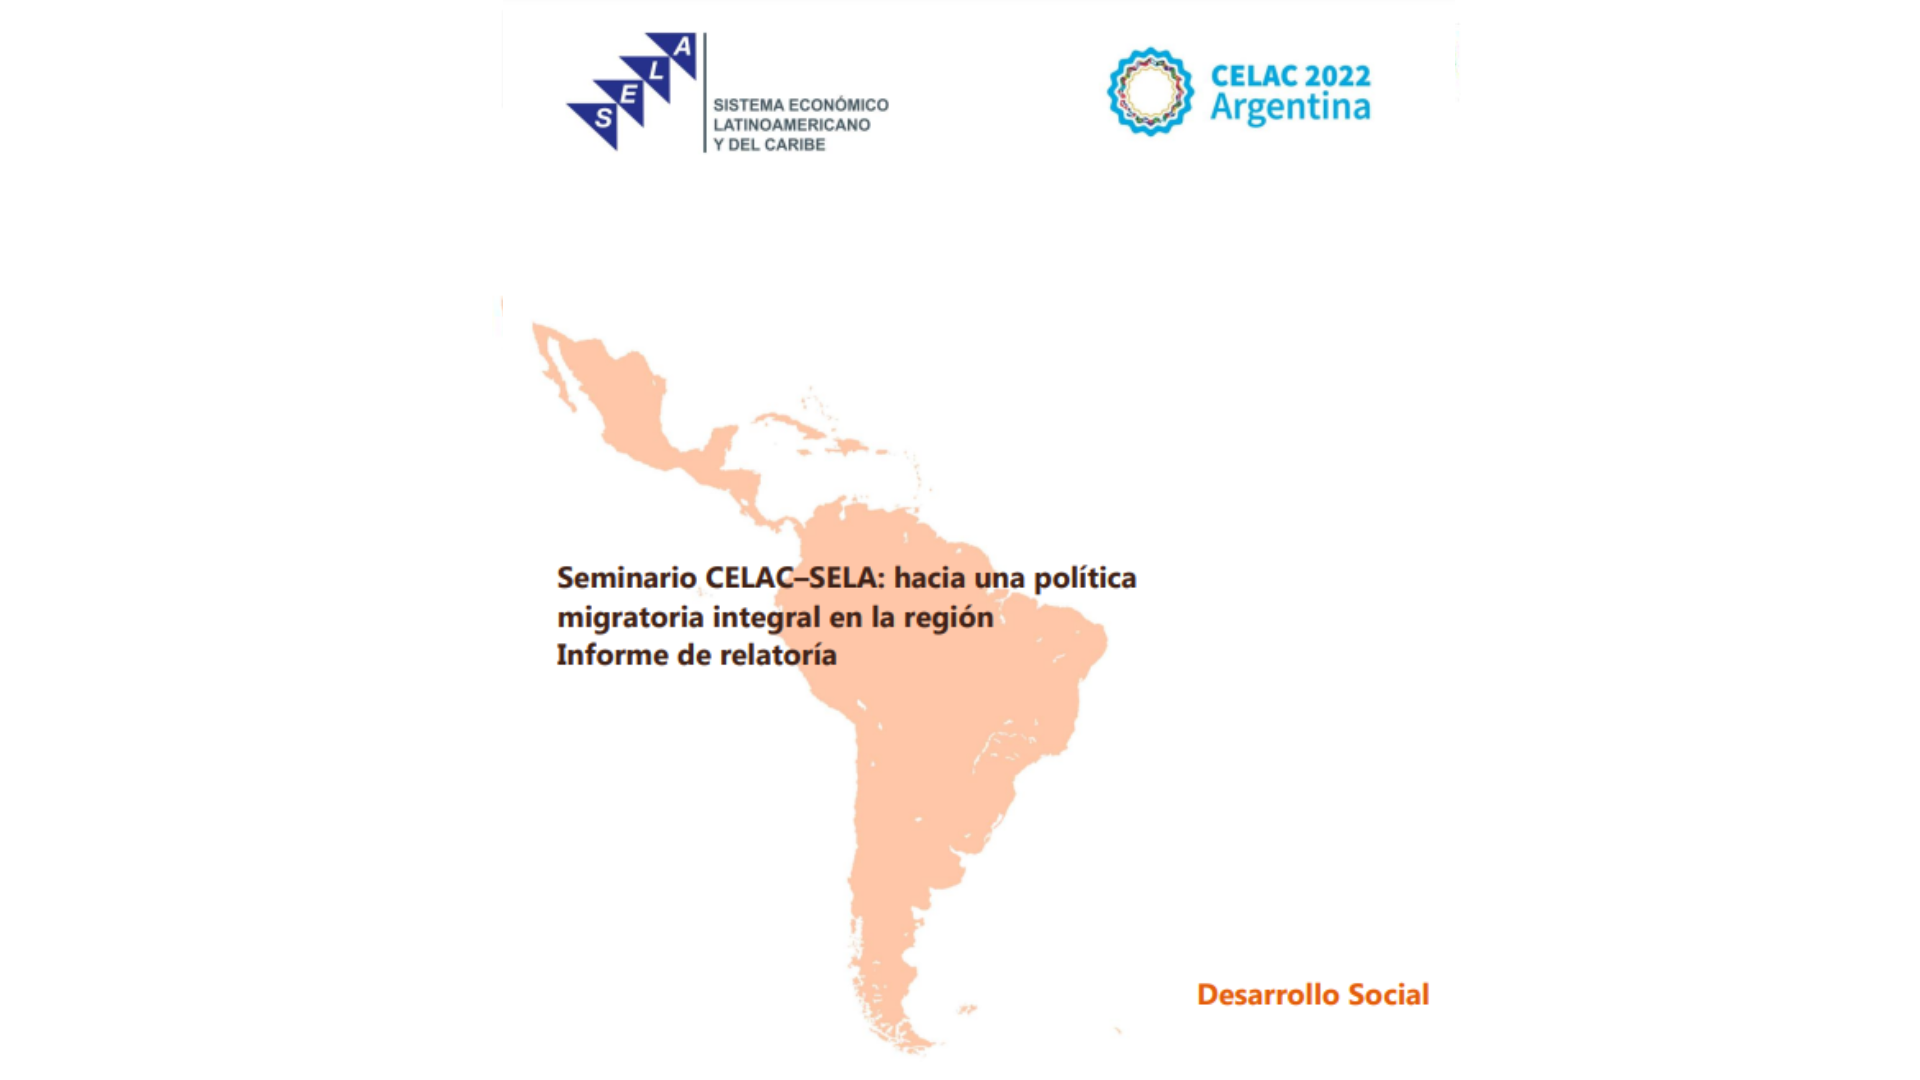 Seminario CELAC-SELA: hacia una política migratoria en la región - Informe de relatoría